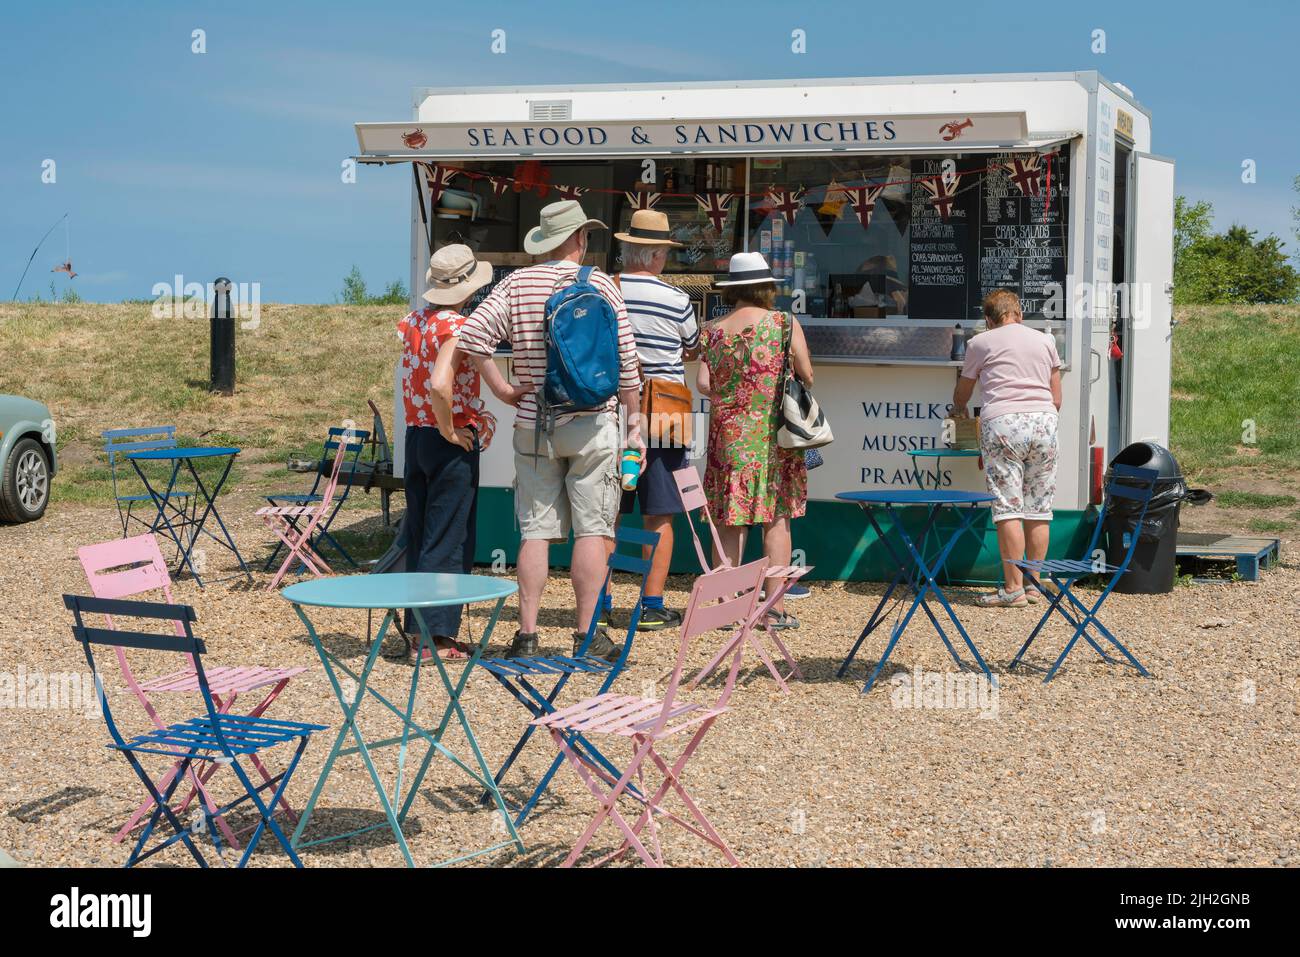 North Norfolk Coast, Blick im Sommer auf Menschen, die an einem Fisch- und Sandwich-Stand im nördlichen Norfolk-Küstendorf Blakeney, England, Schlange stehen Stockfoto